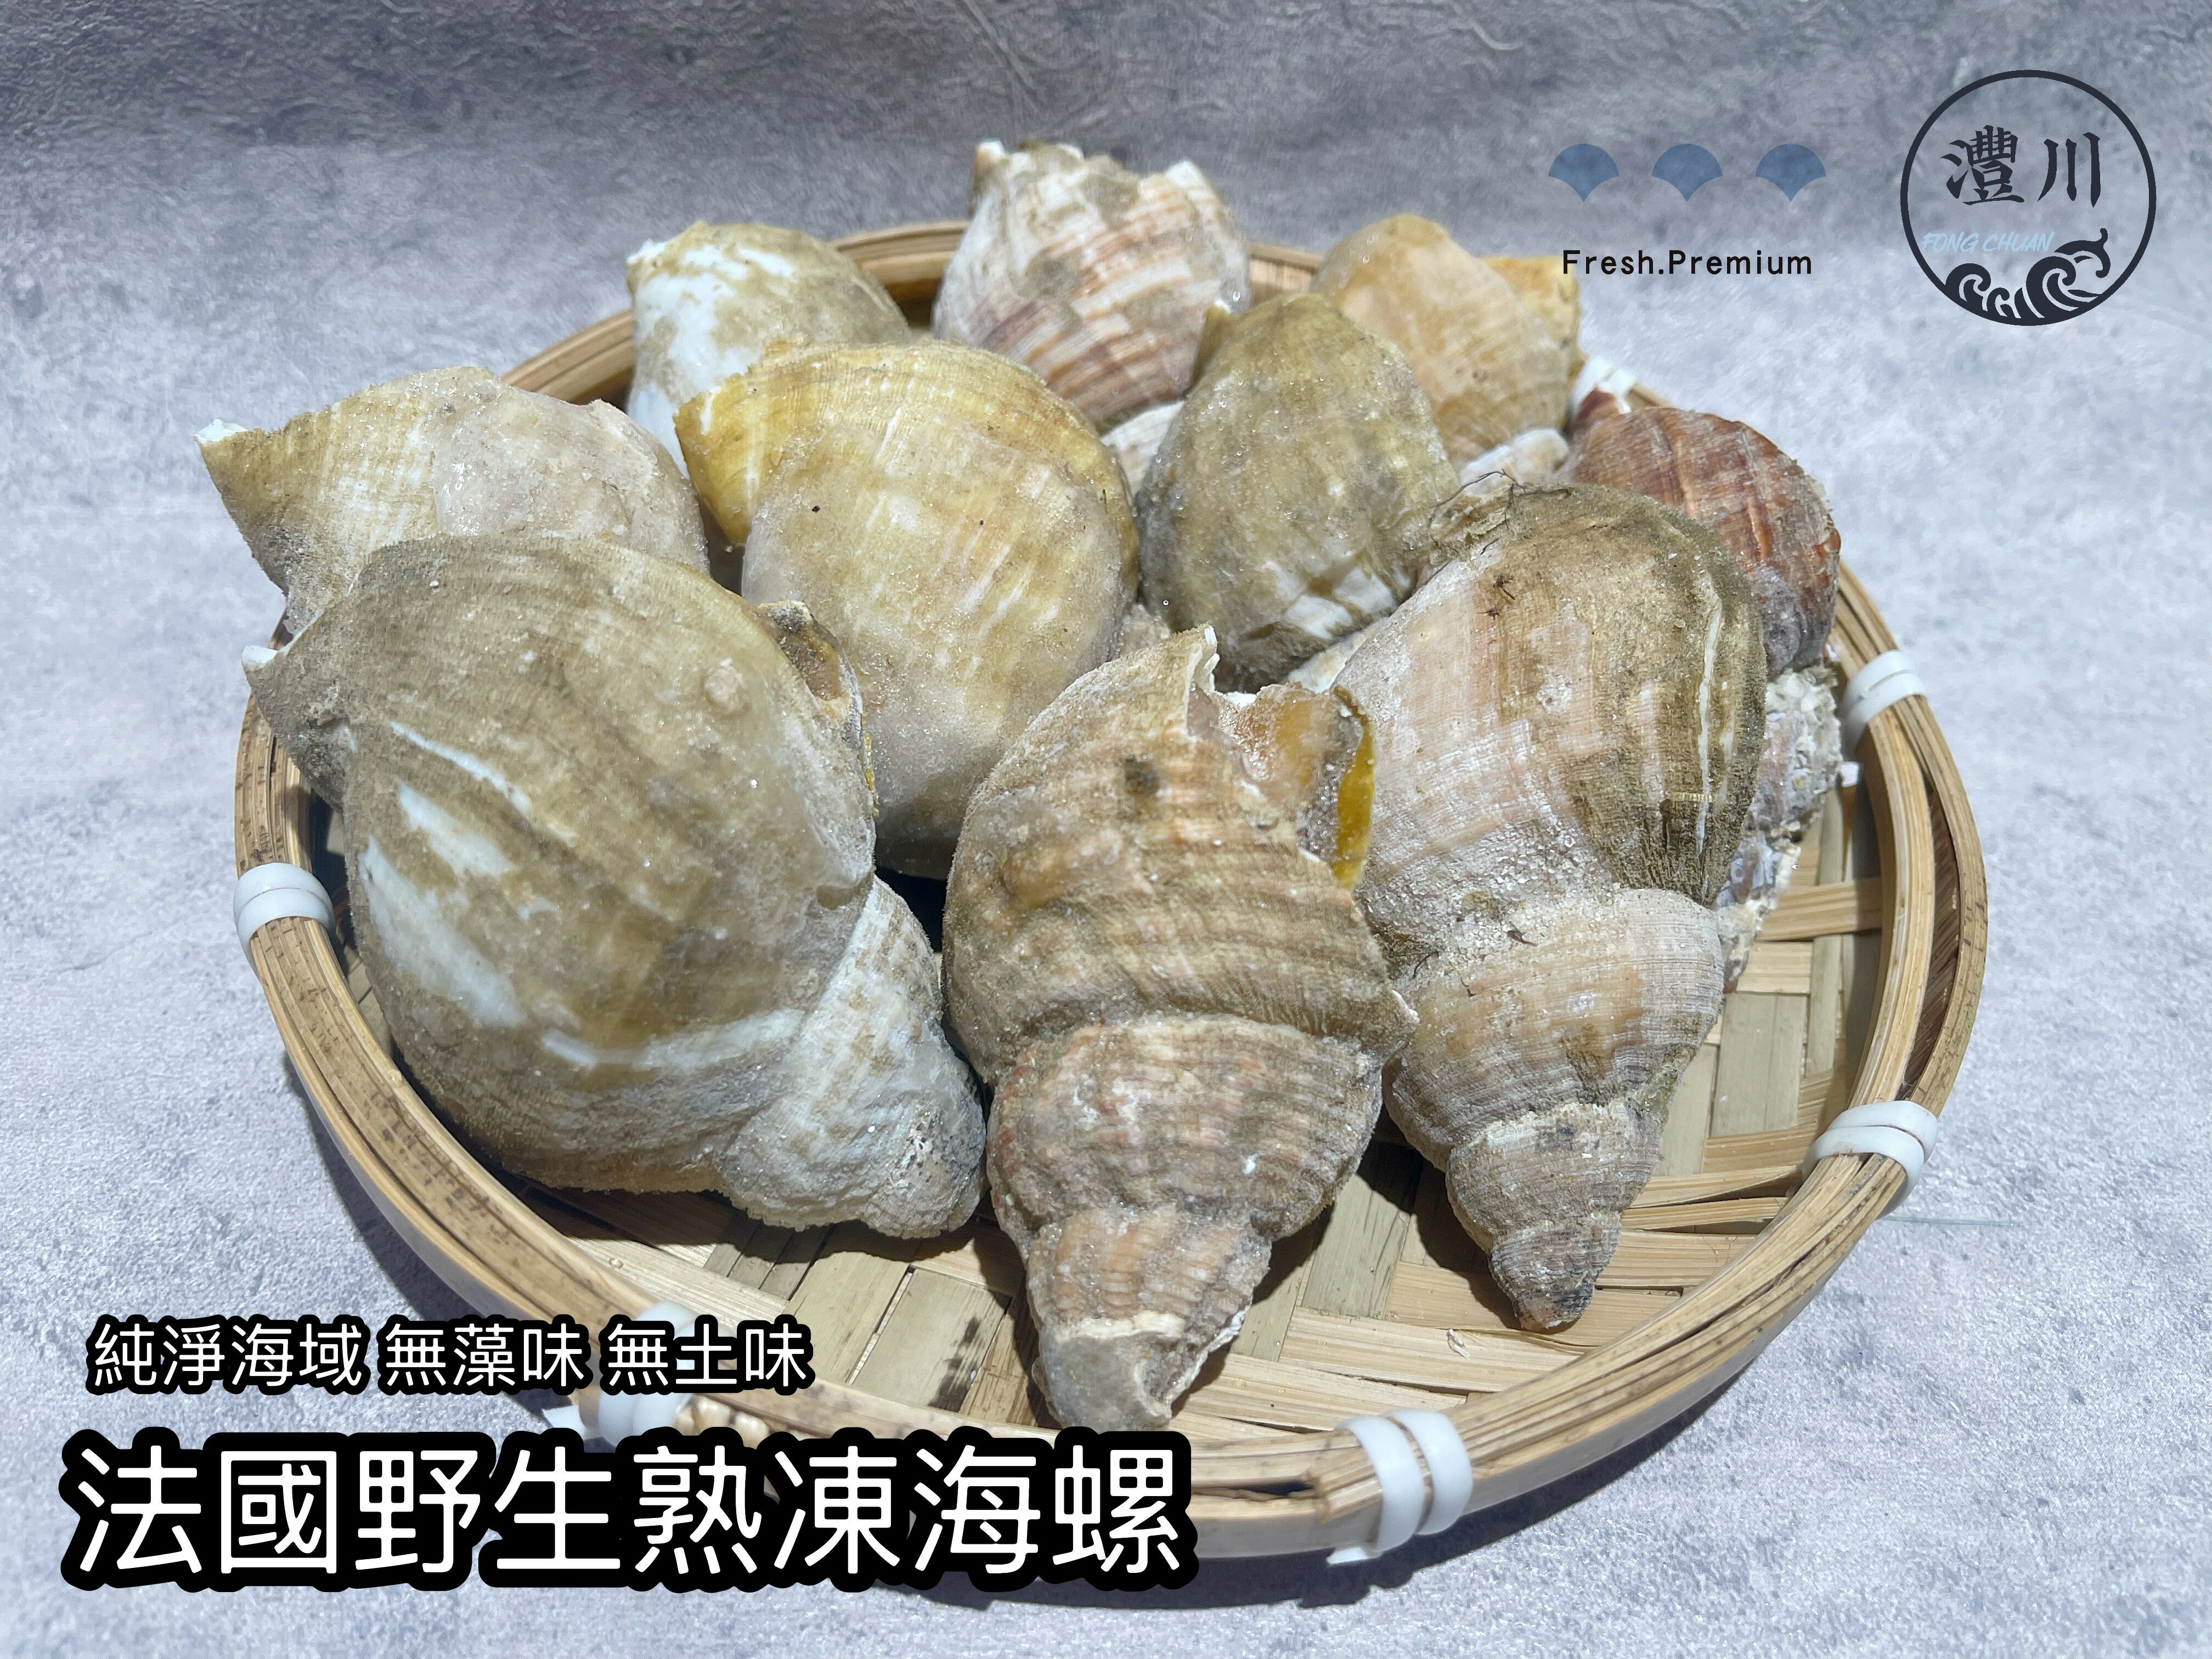 【灃川生鮮】鮮凍法國野生海螺